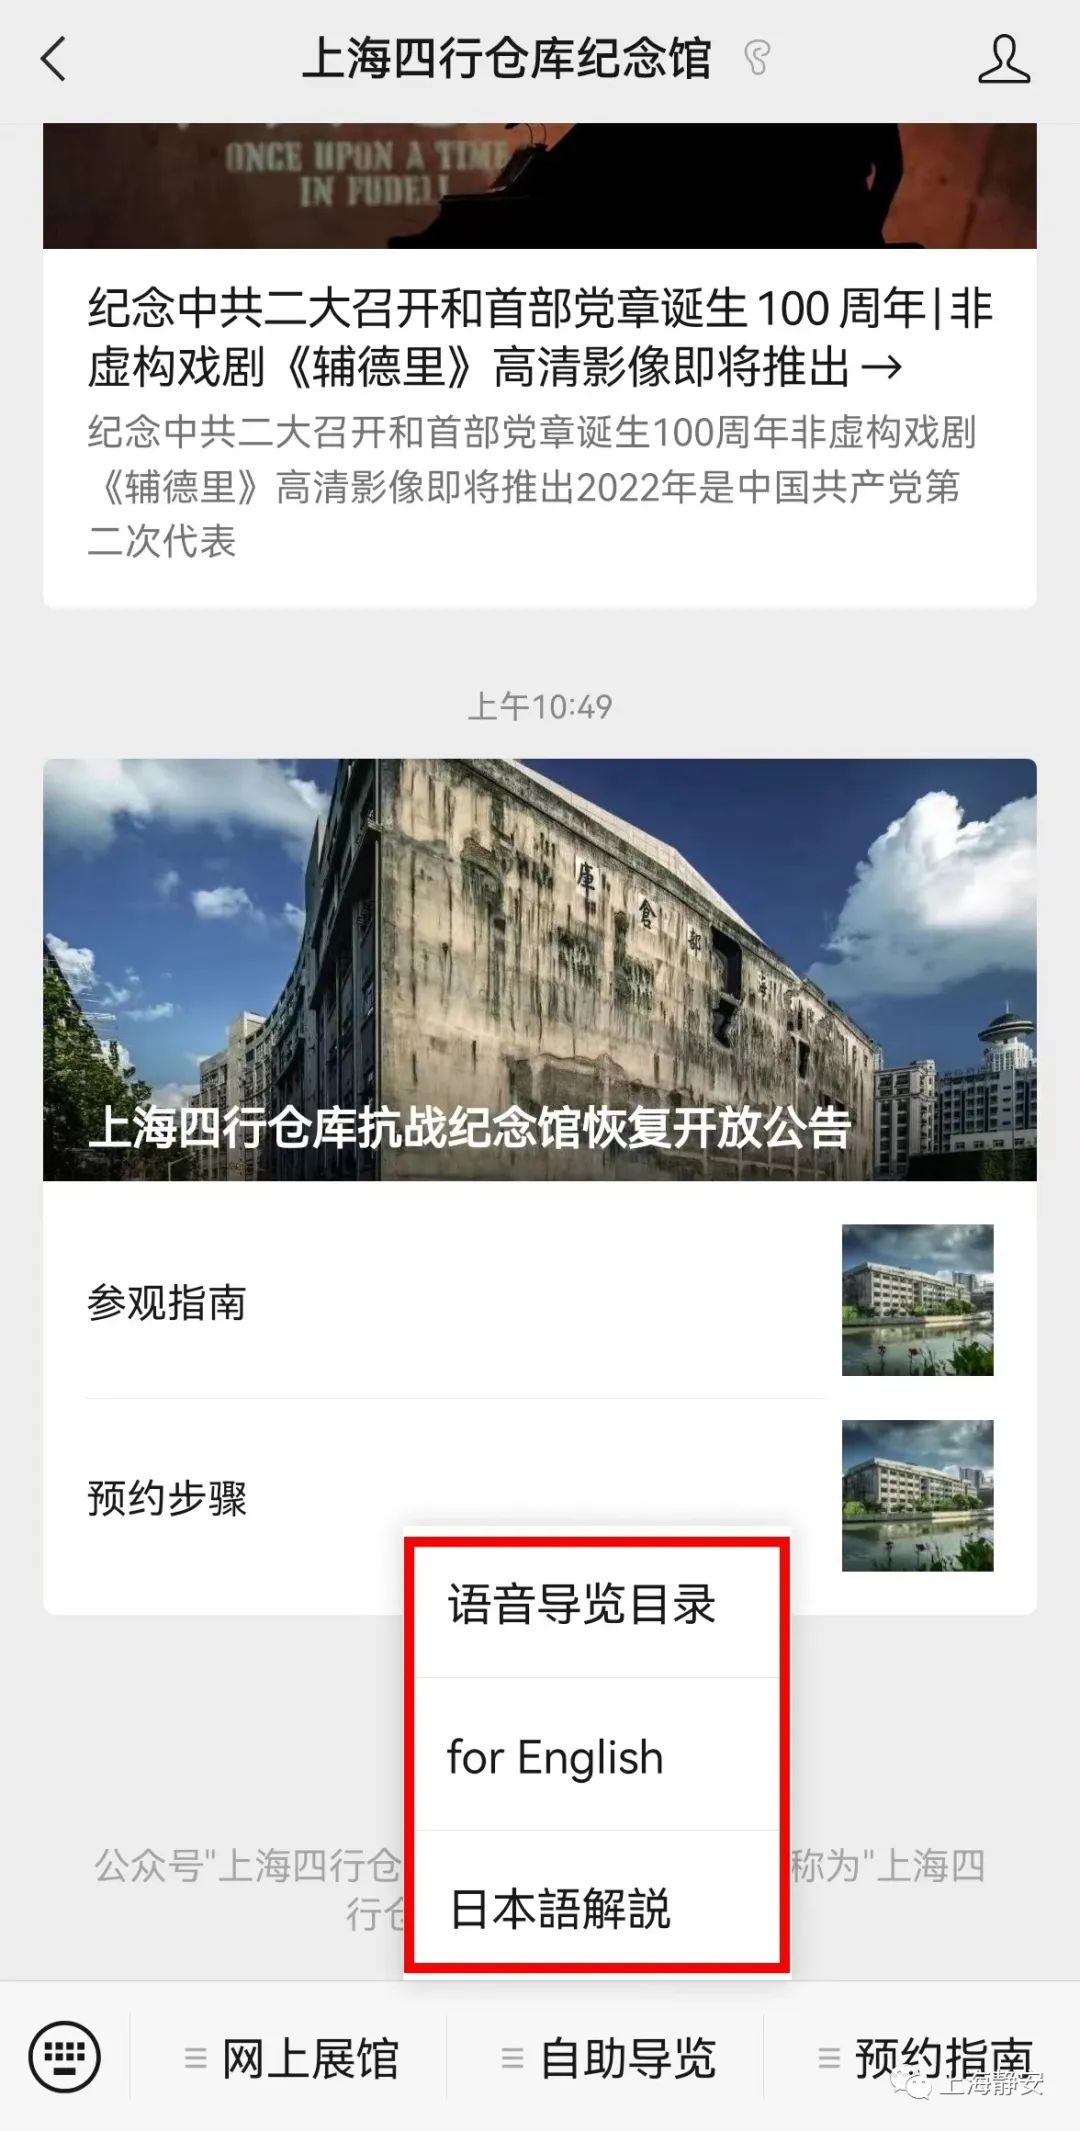 上海四行仓库抗战纪念馆将于7月30日恢复开放-